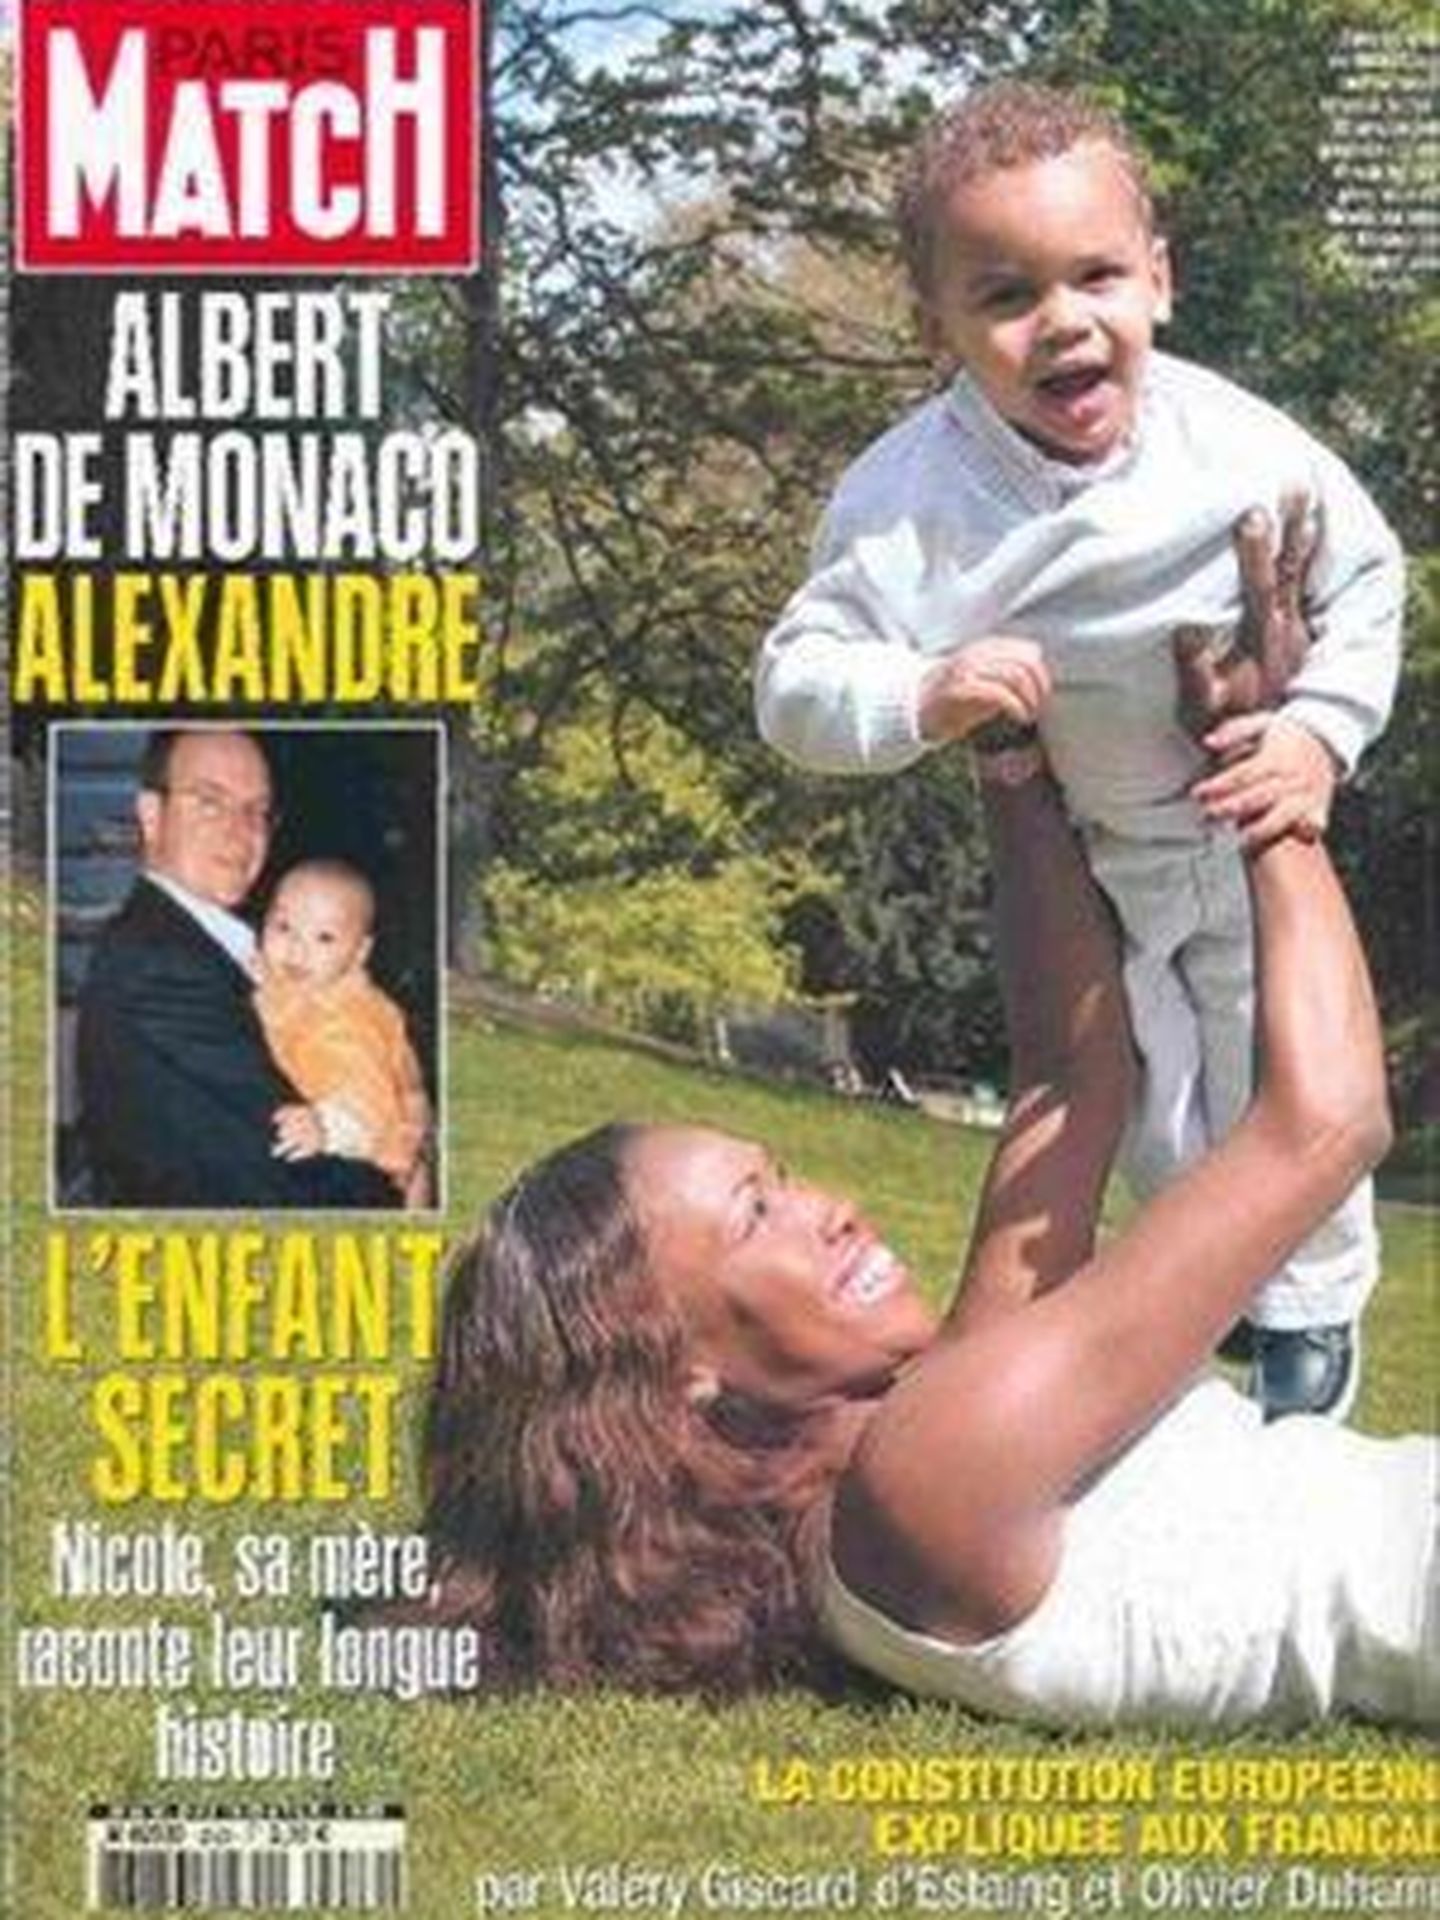 La revista francesa fue la encargada de dar la exclusiva de la paternidad de Alberto de Mónaco